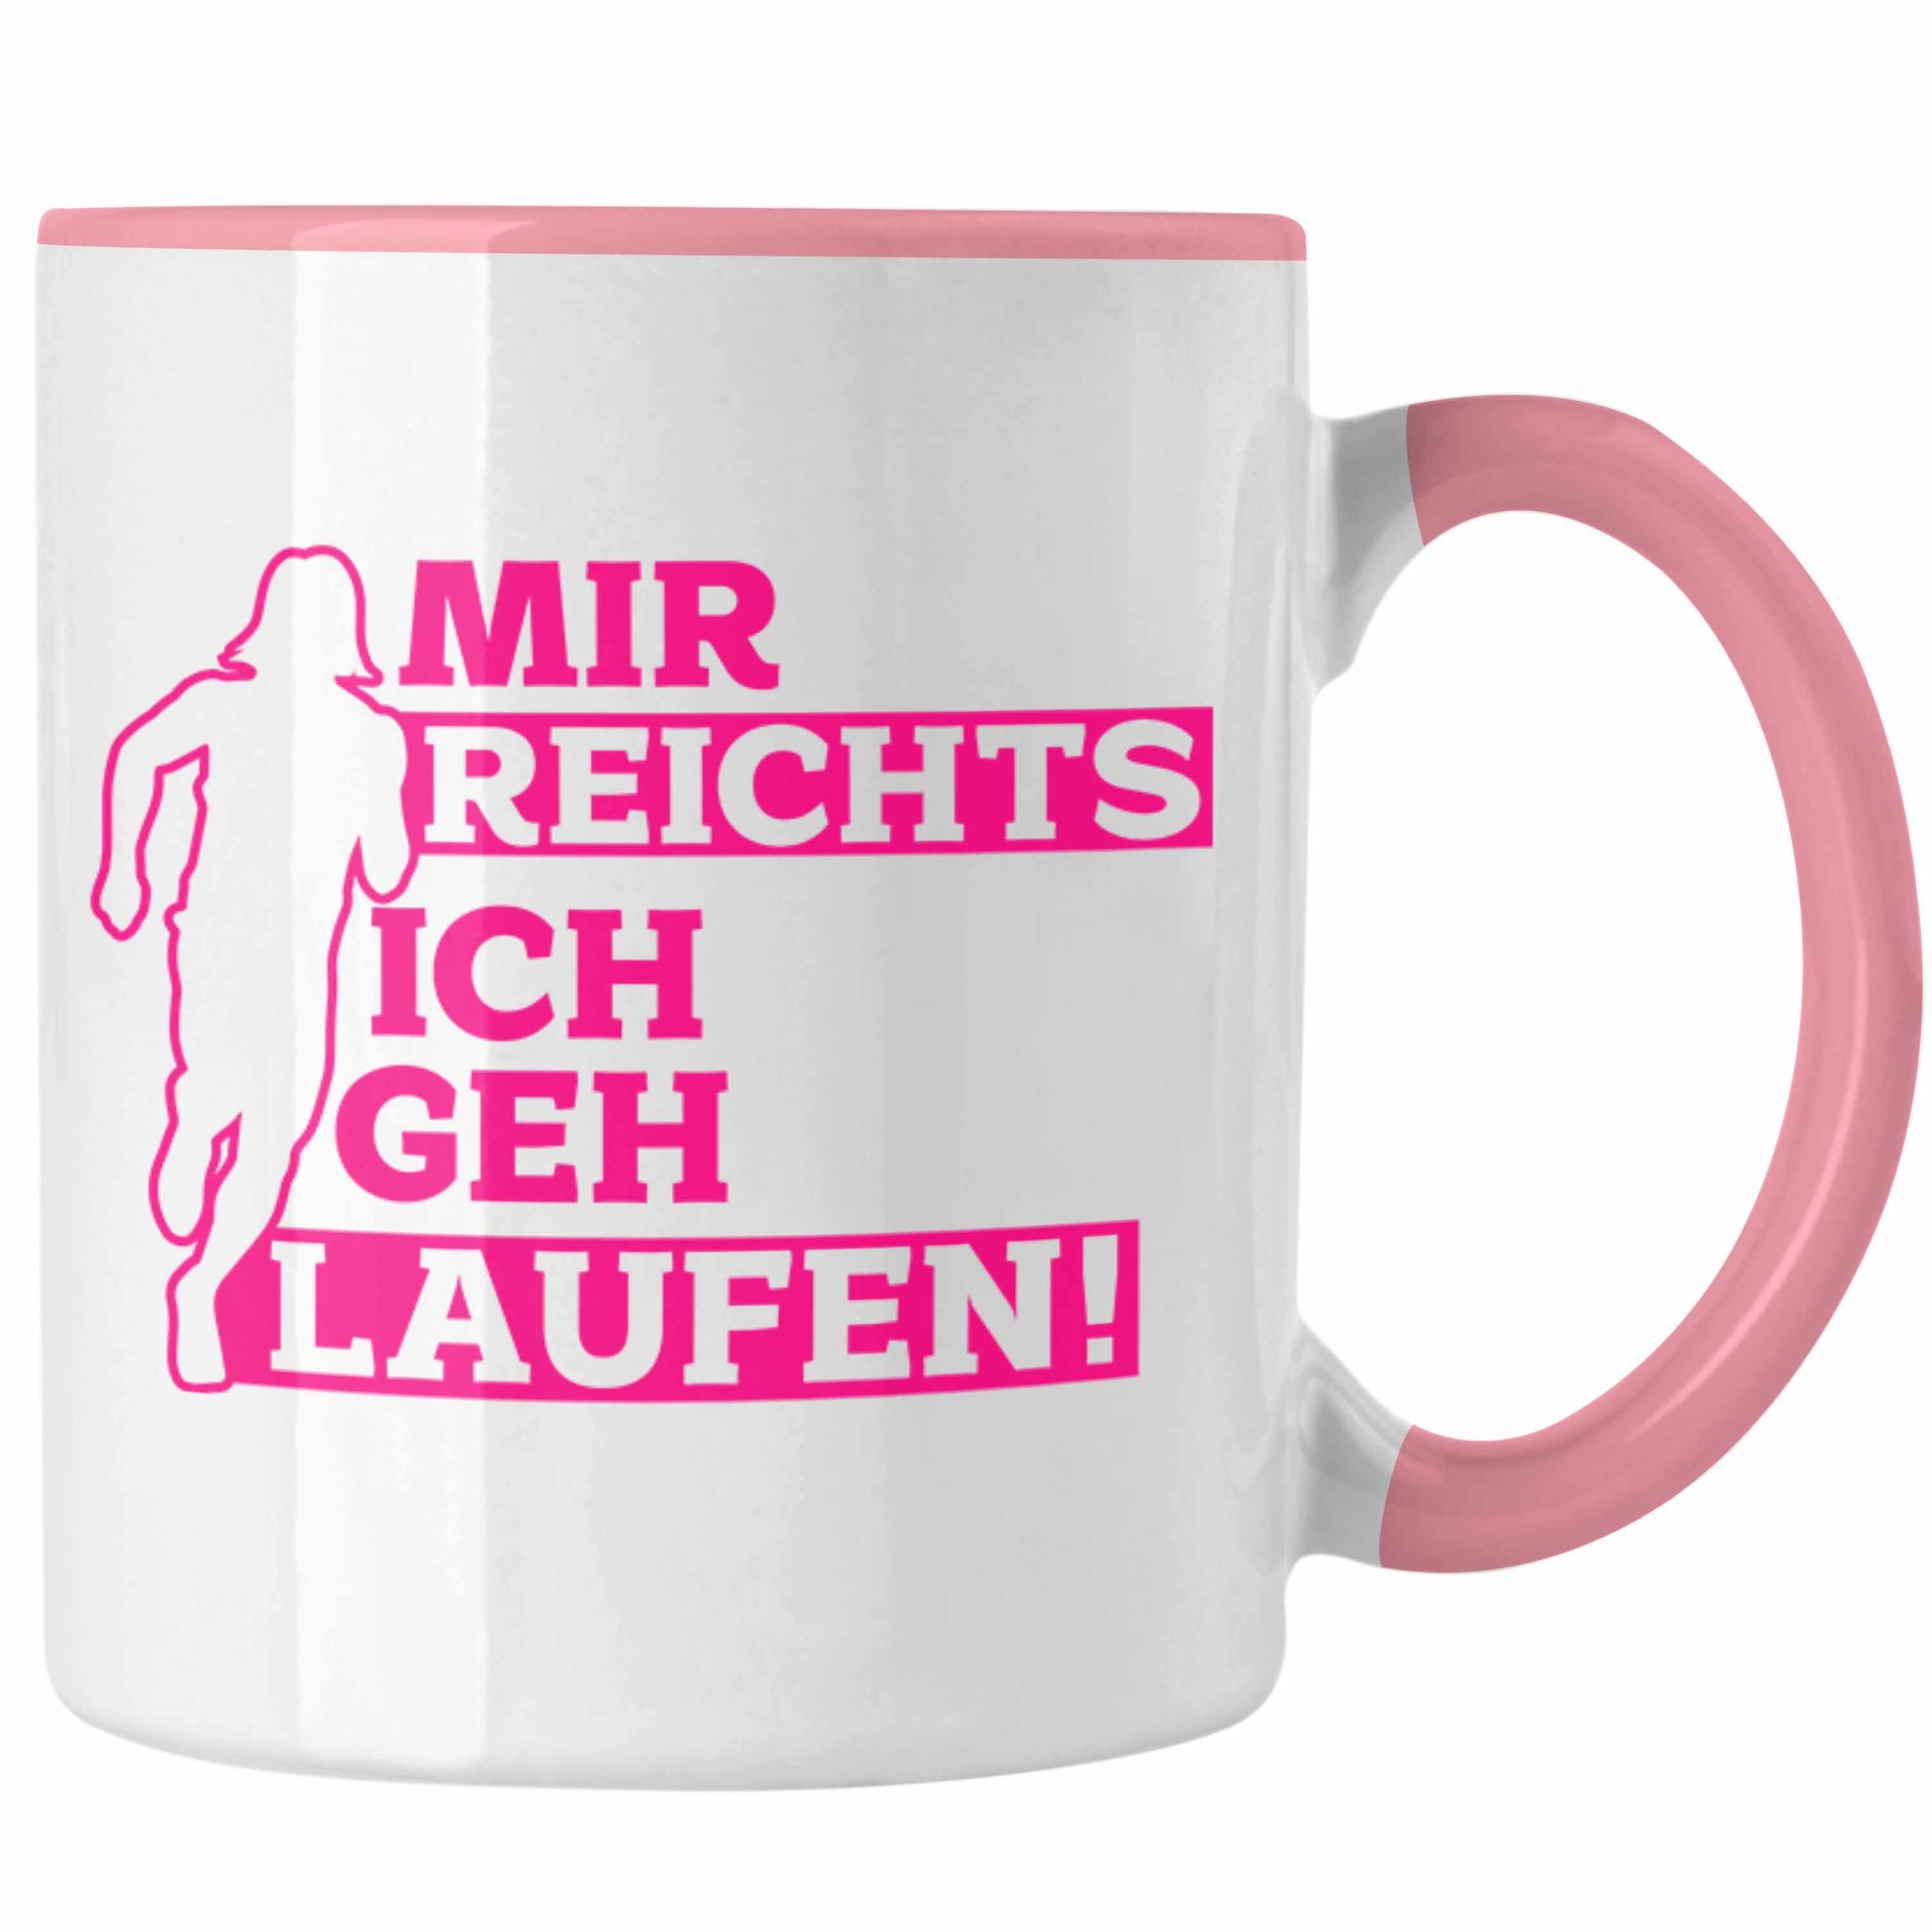 Trendation Joggerinnen für Ich Joggen Reichts "Mir Geschenk Rosa Tasse Geh Laufen" Tasse